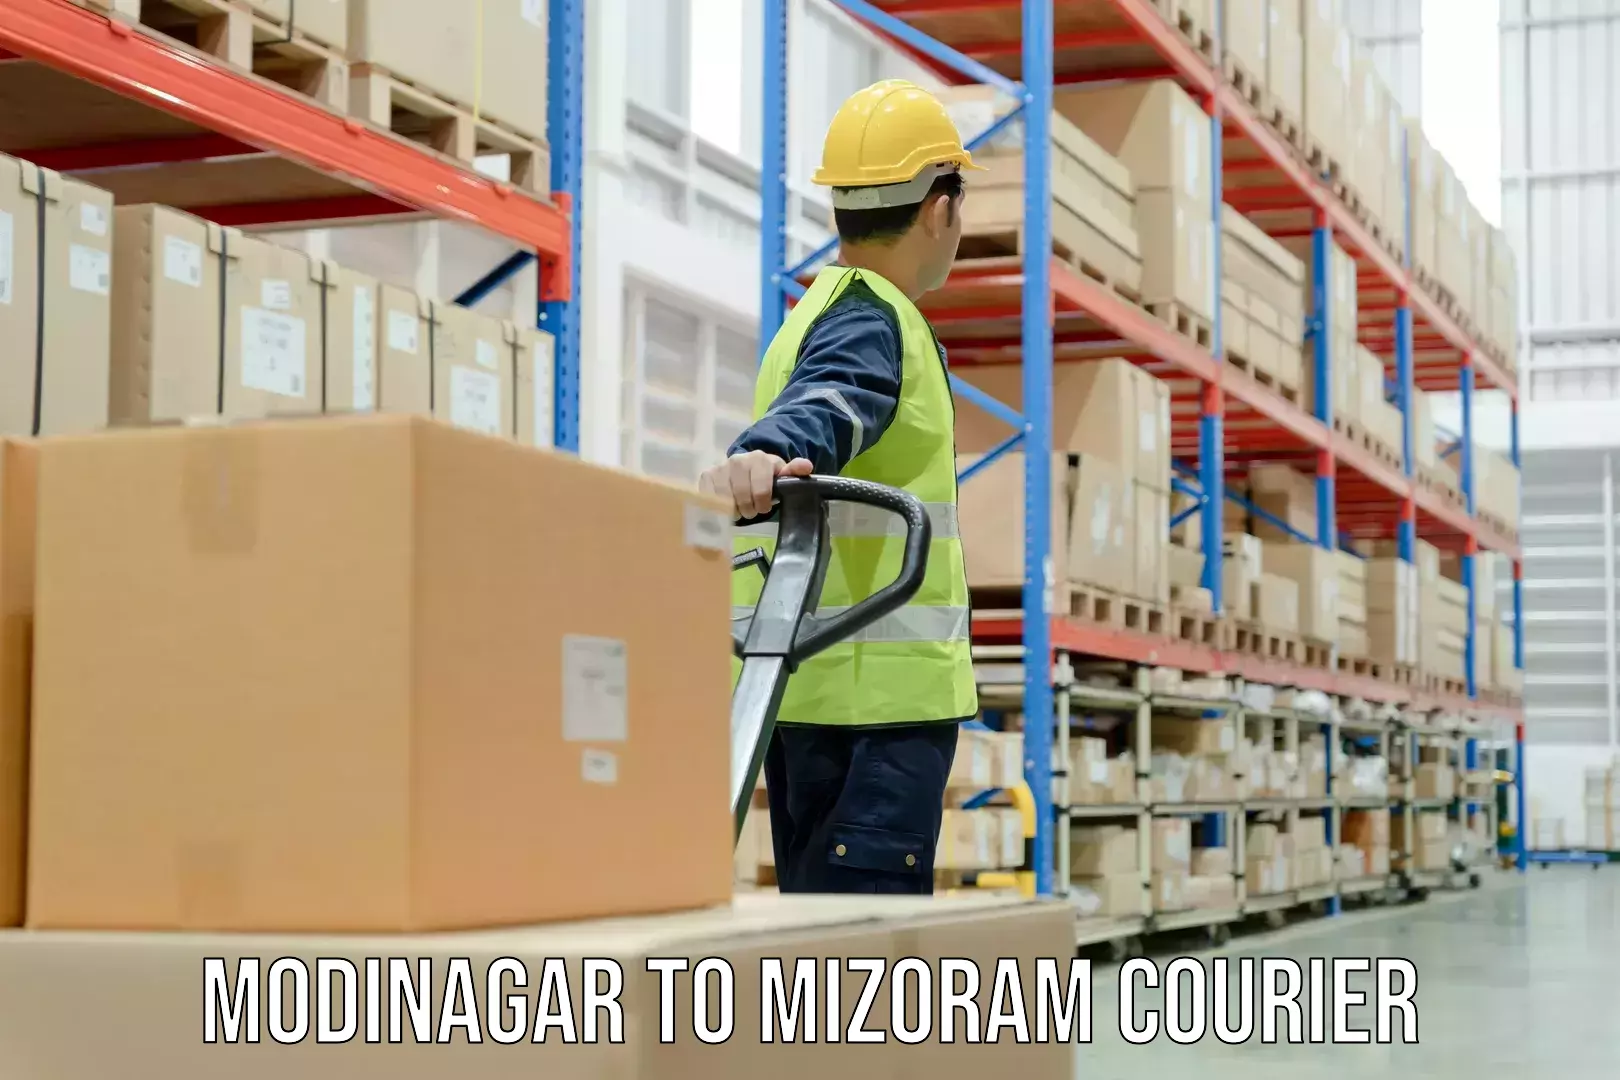 24-hour courier service Modinagar to Aizawl